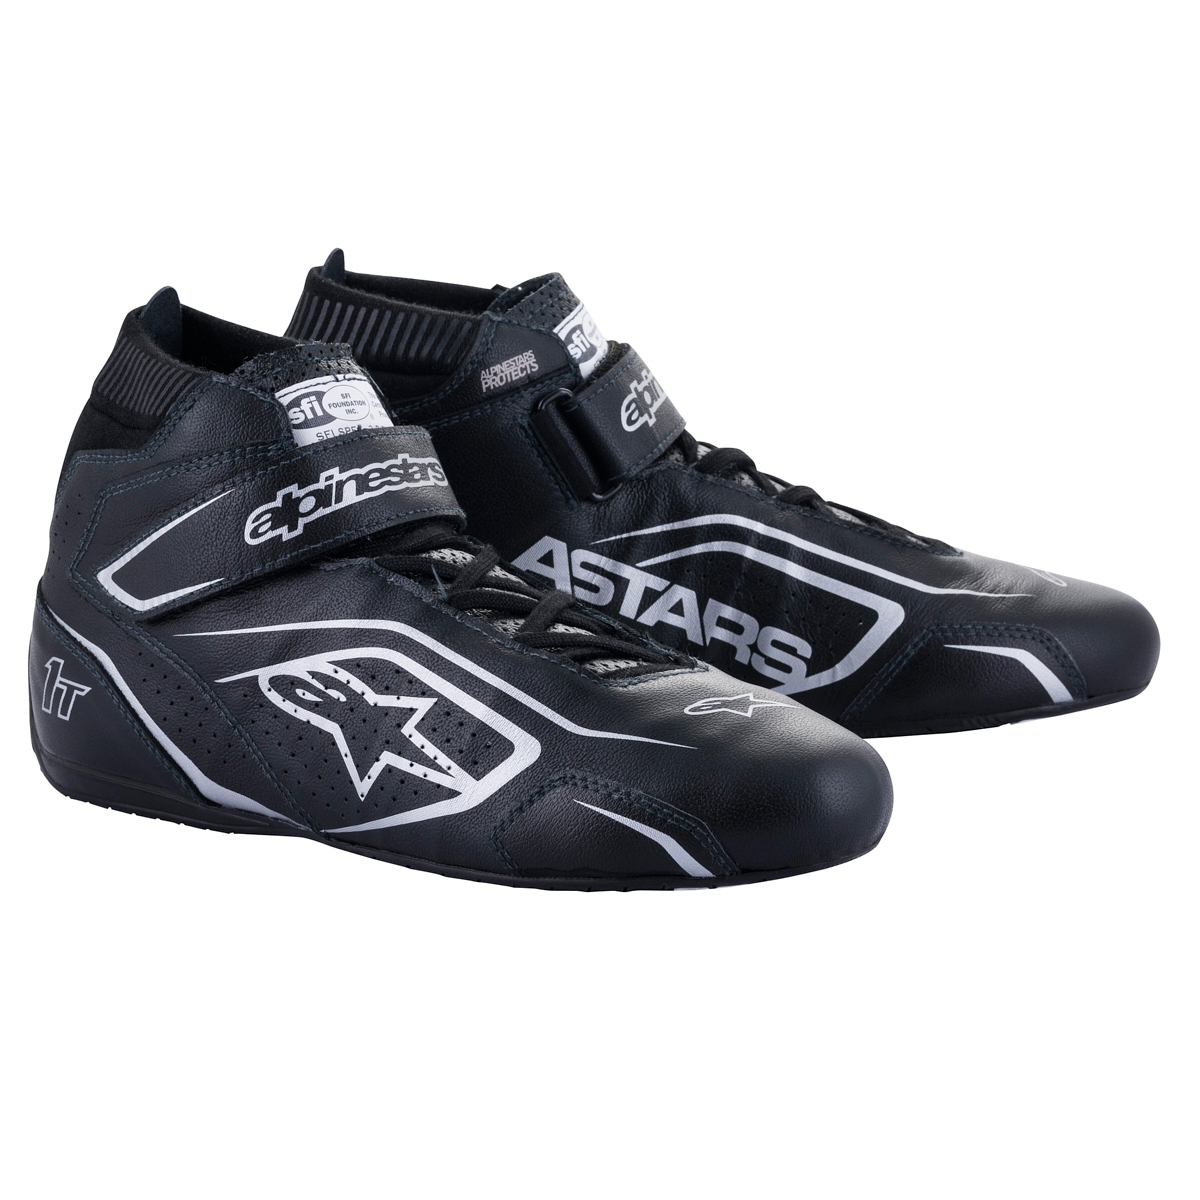 Alpinestars 2710122-119-8.5 - Shoe Tech-1T V3 Black / Silver Size 8.5